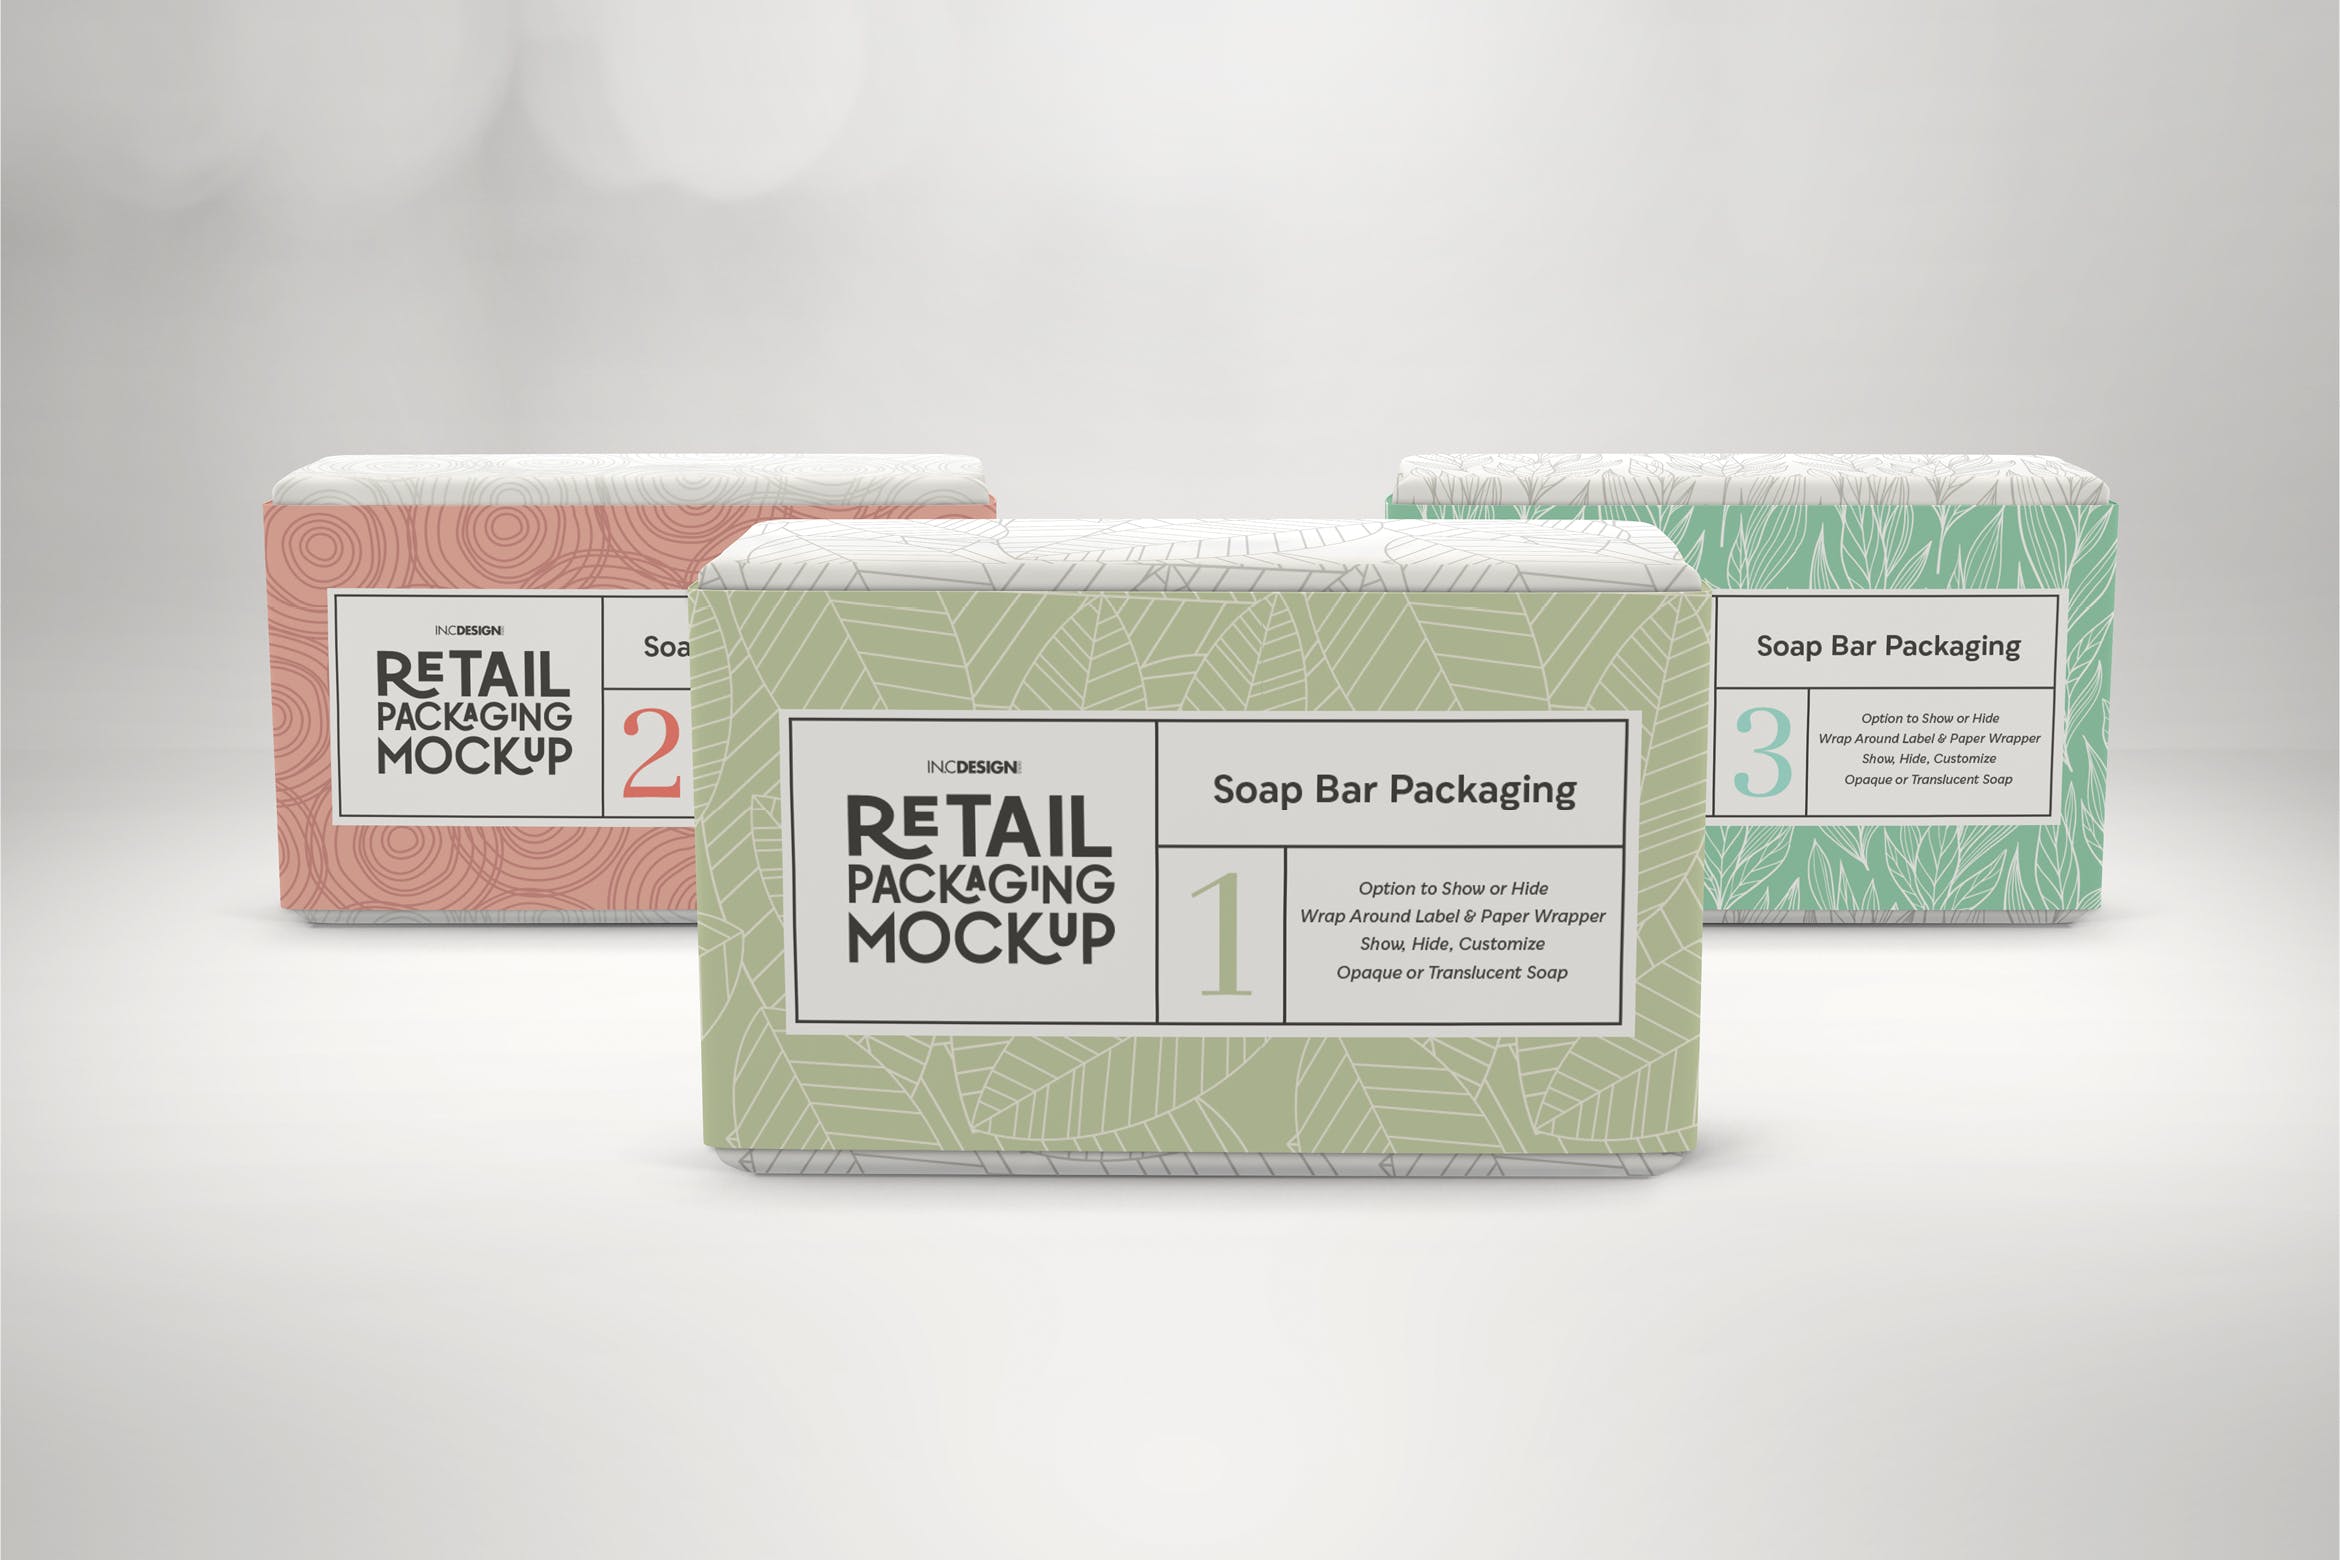 肥皂包装纸袋设计效果图第一素材精选 Retail Soap Bar Packaging Mockup插图